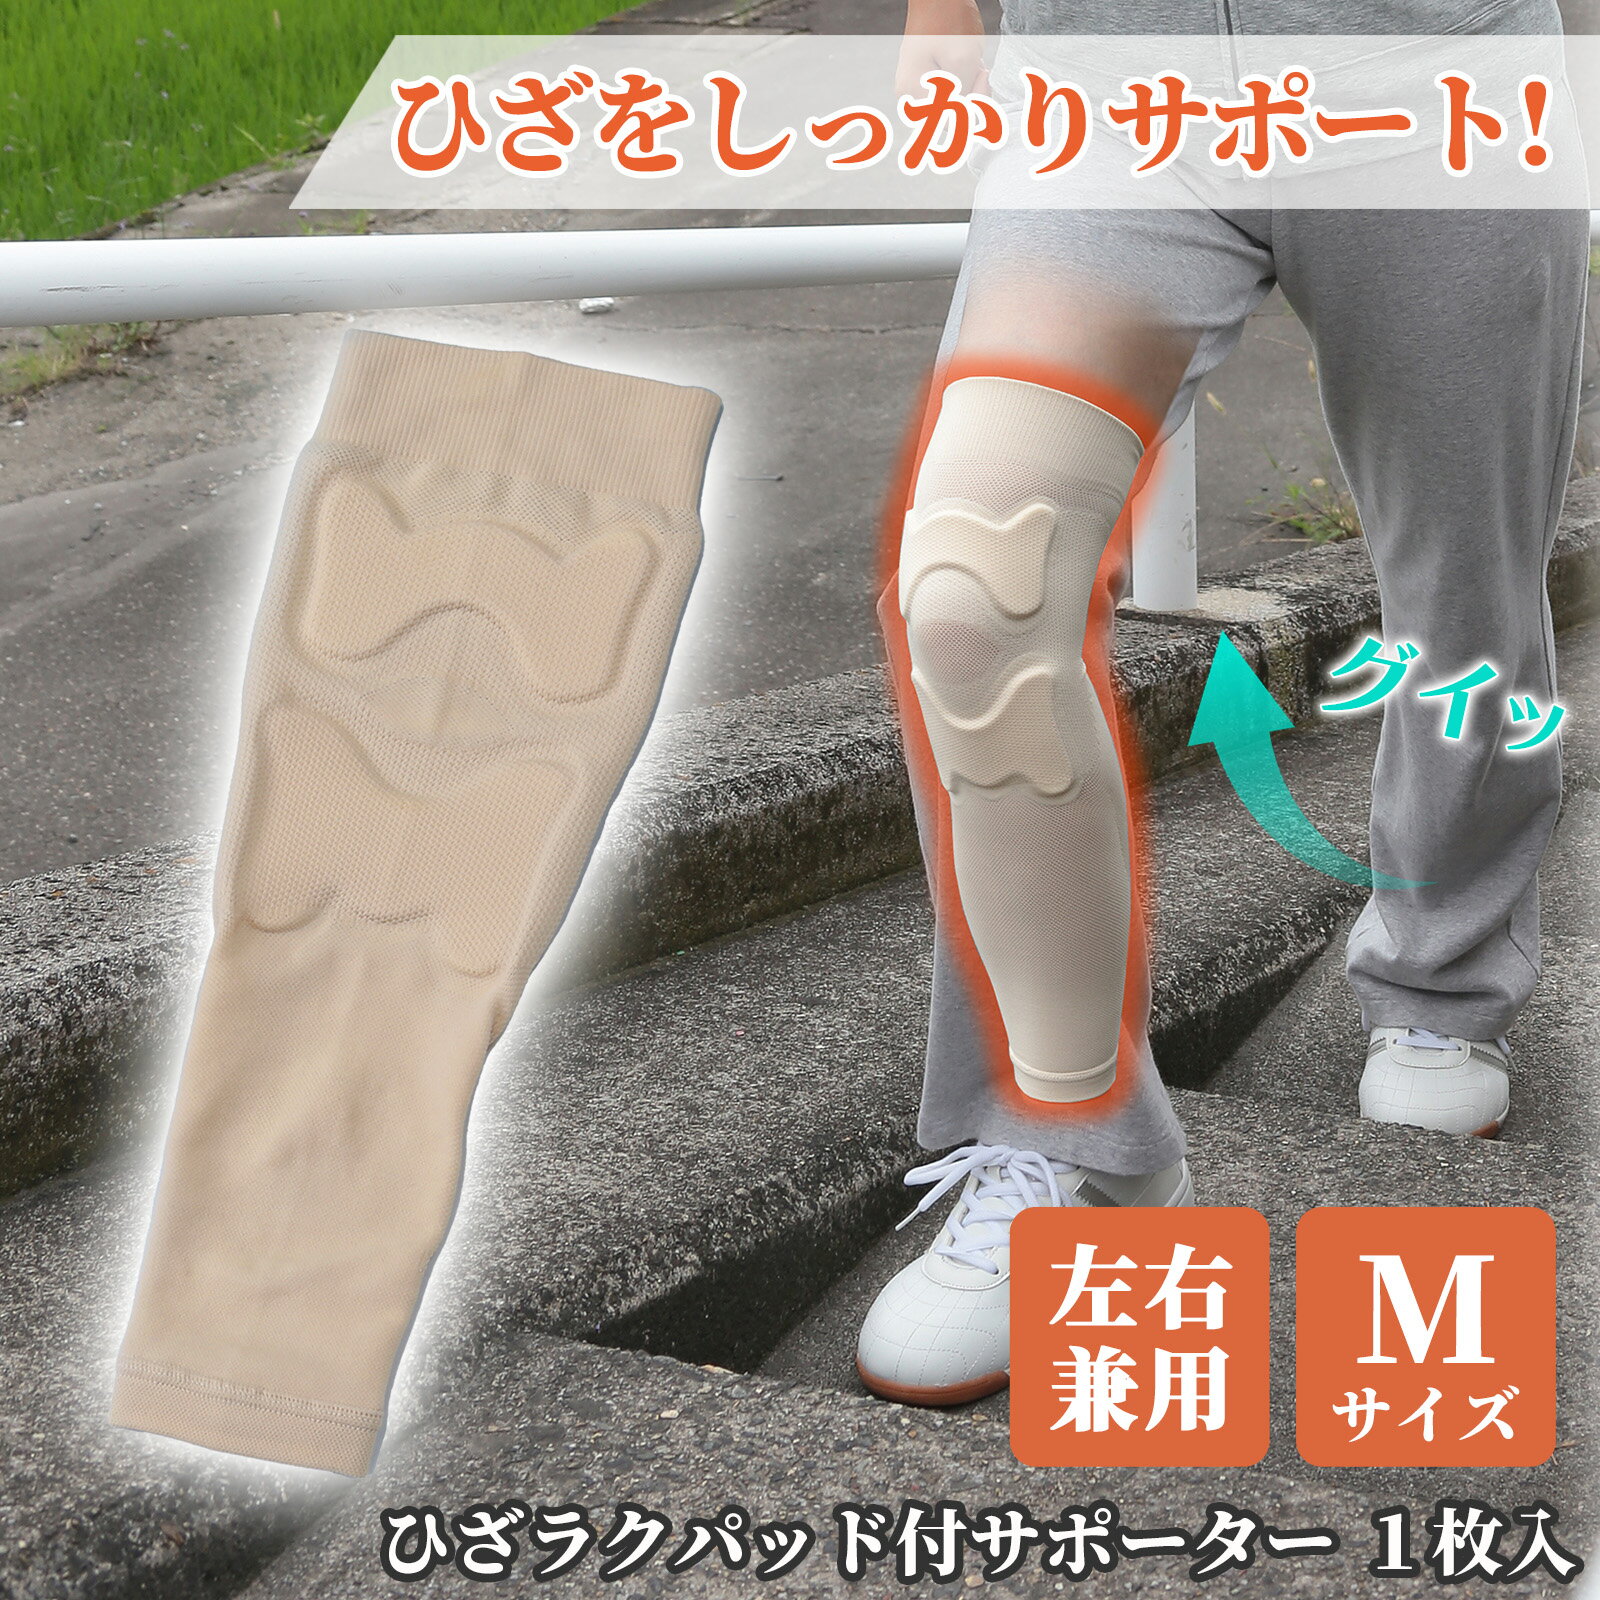 【送料無料】 ひざラクパッド付サポーター M (1枚組) 膝